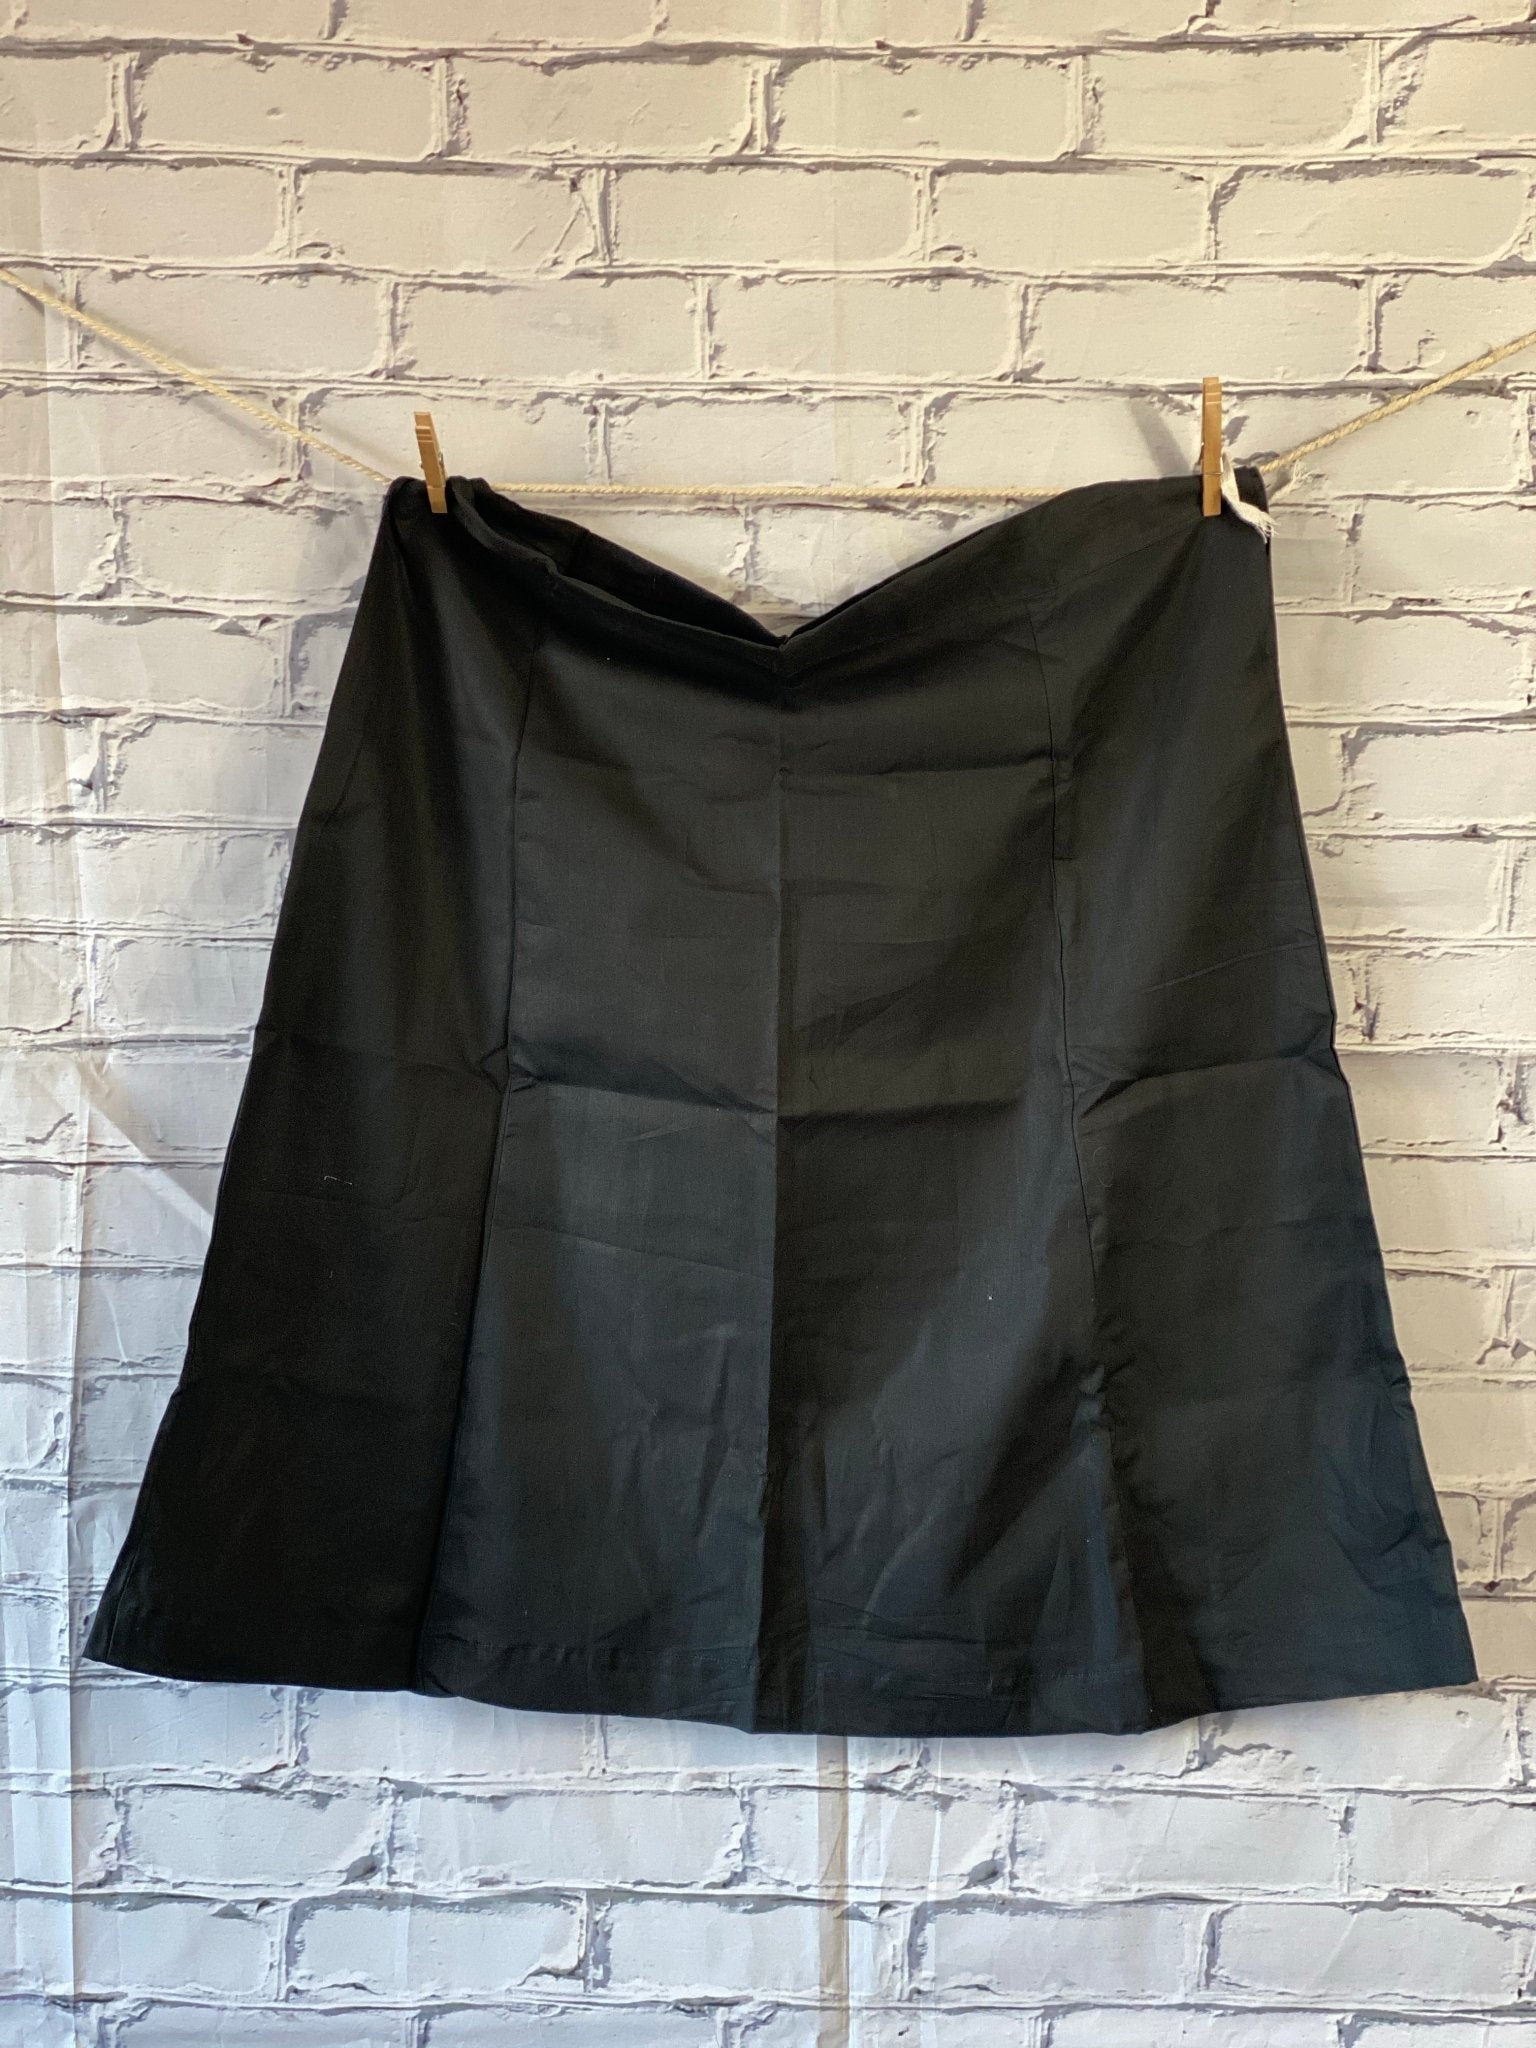 Plus size, 100% Cotton petticoat/slip-008 - Rangeelaa- Fairtrade Sustainable Women's Clothing